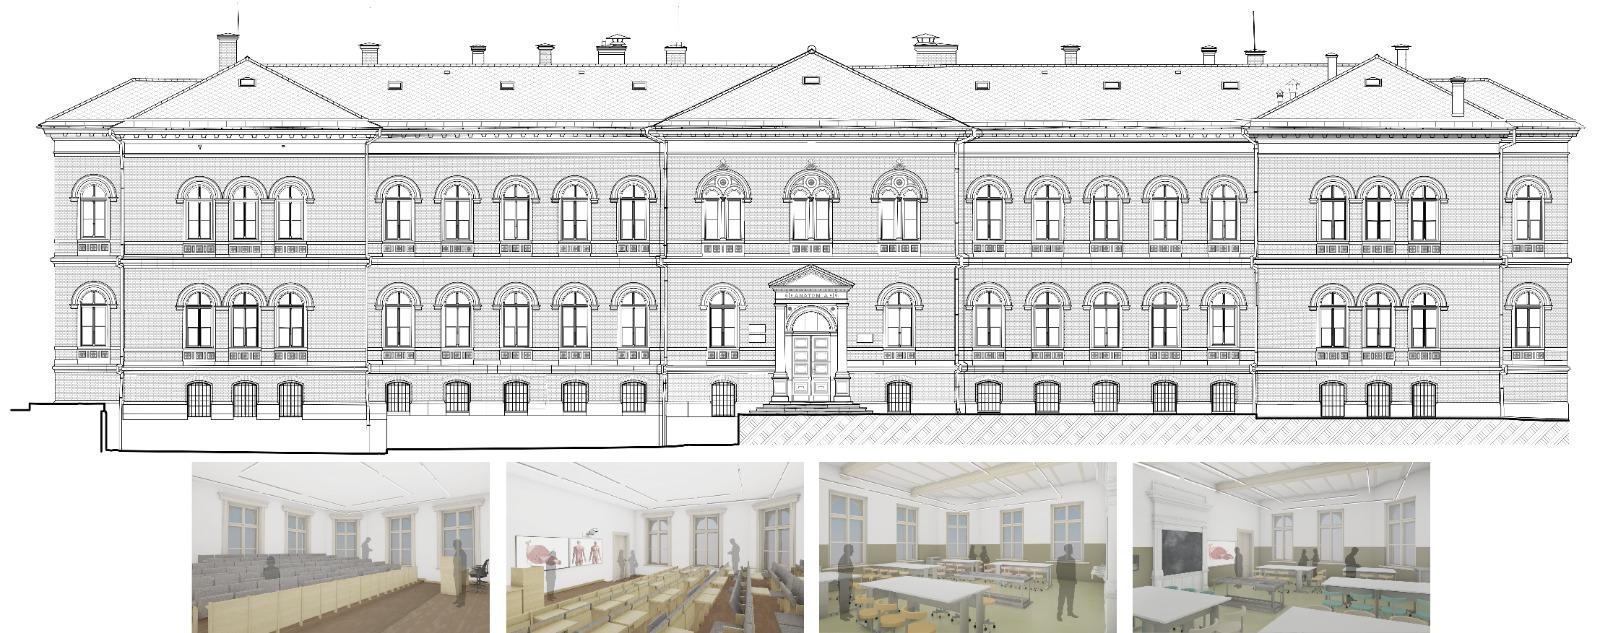 Clădirea Anatomie a UMF Cluj va fi reabilitată și modernizată. Investiție de peste 11 milioane de euro